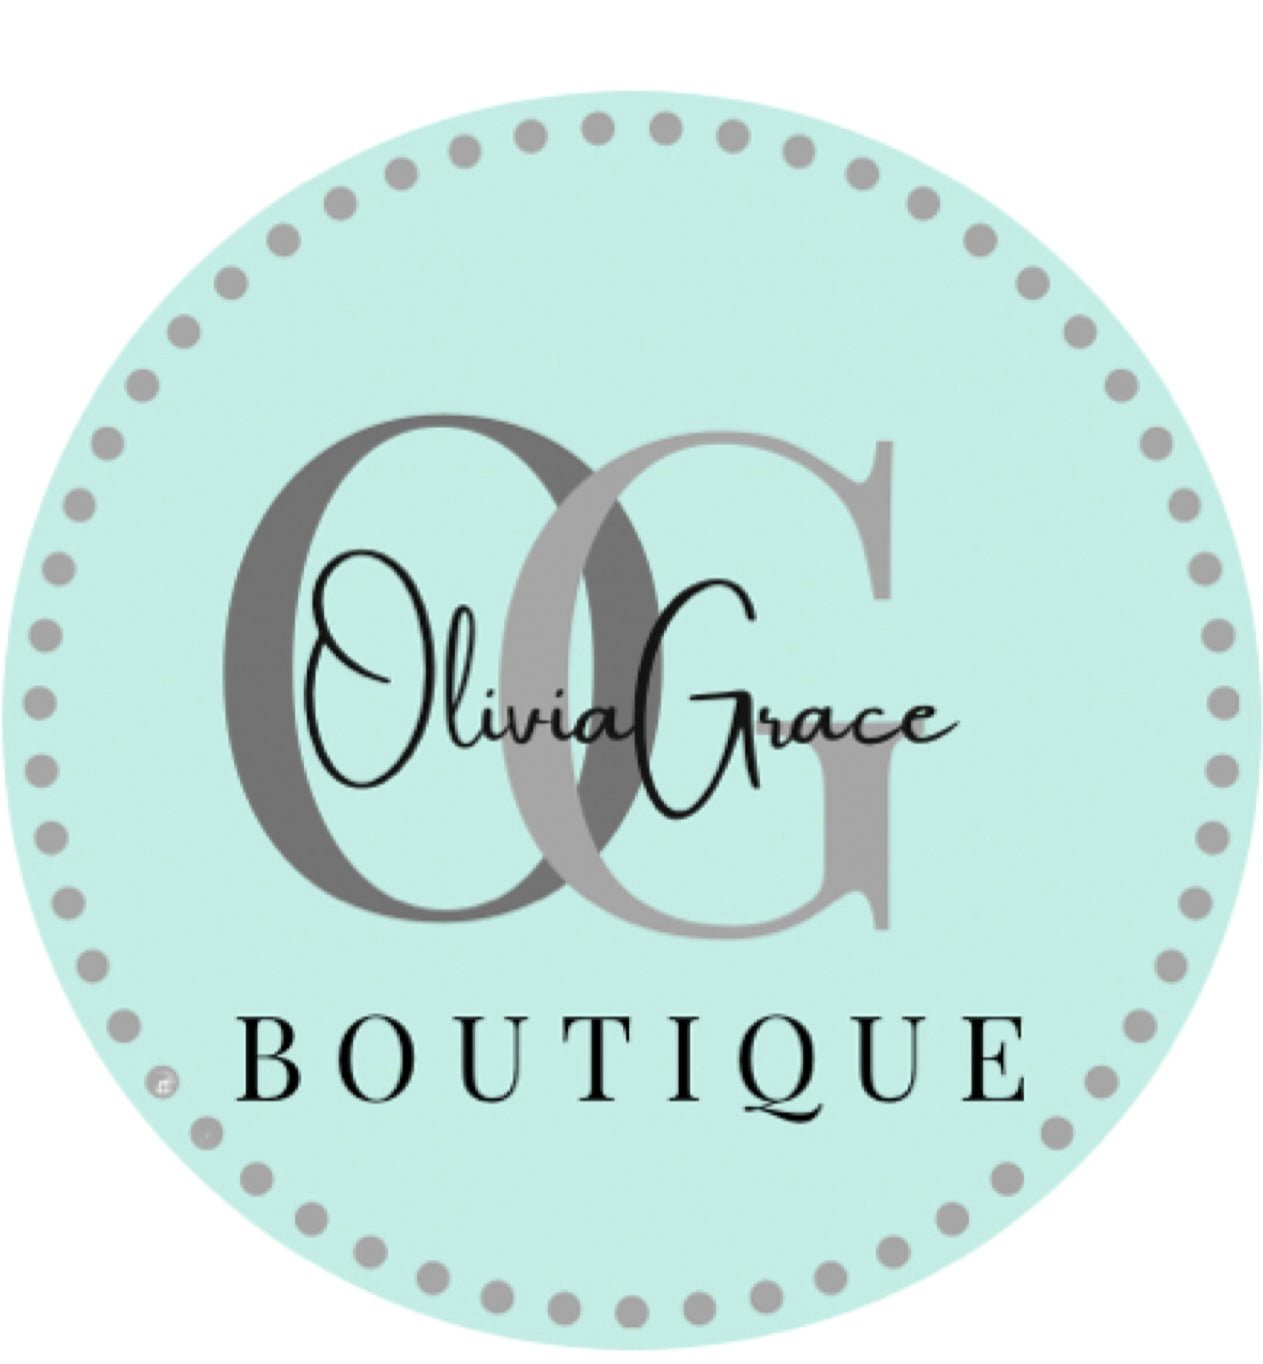 OliviaGrace Boutique 